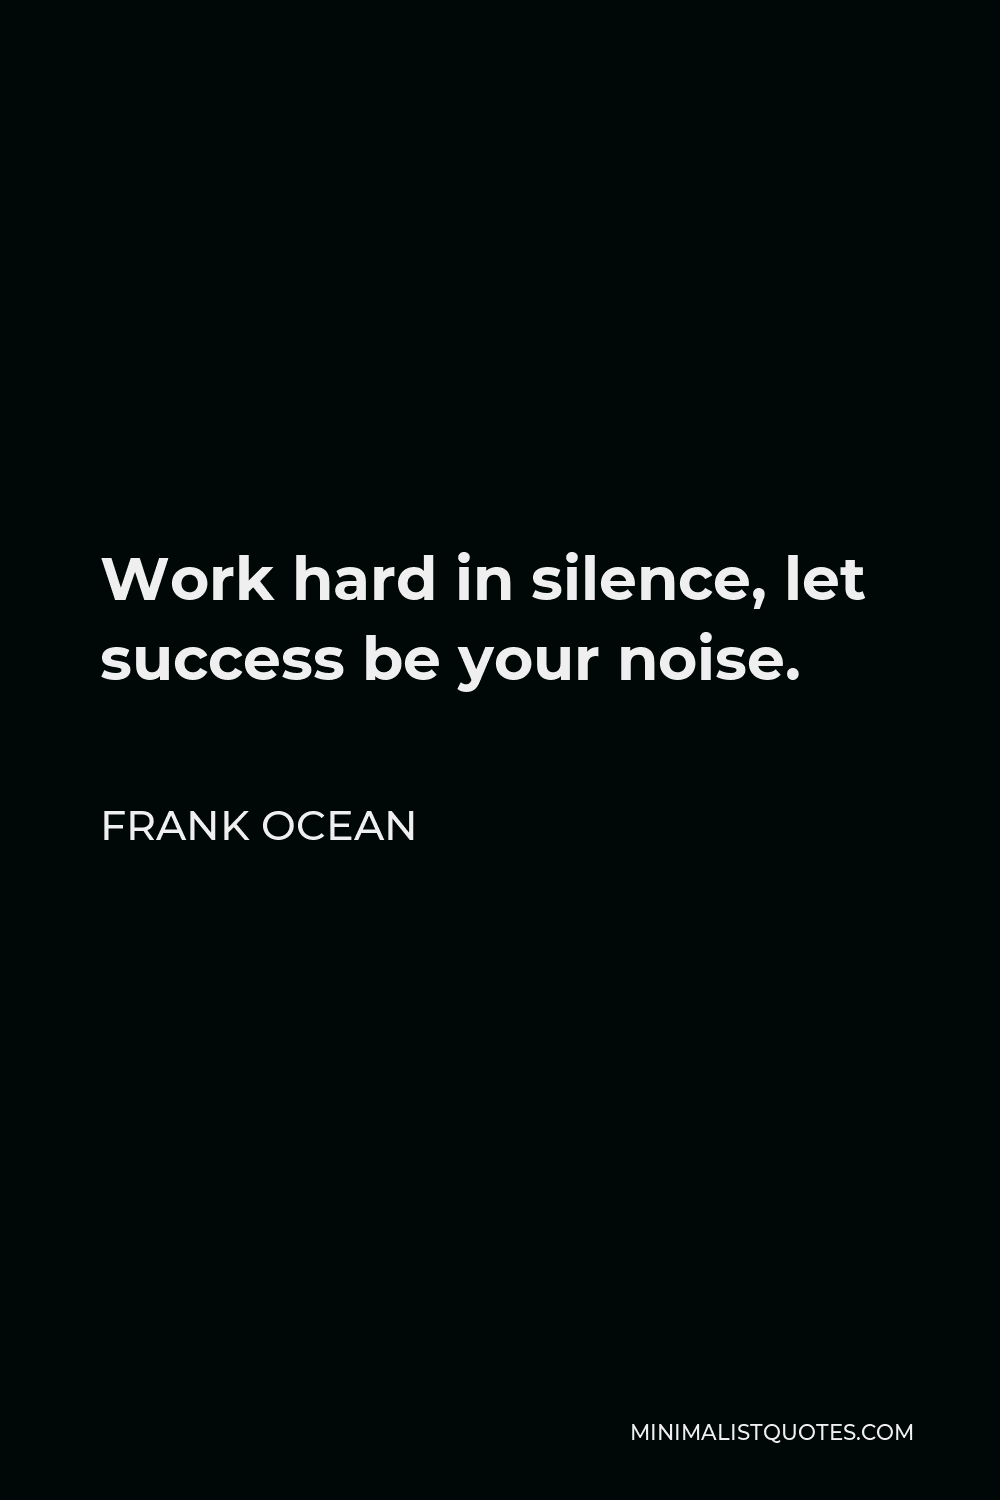 Let Success Be Your Noise